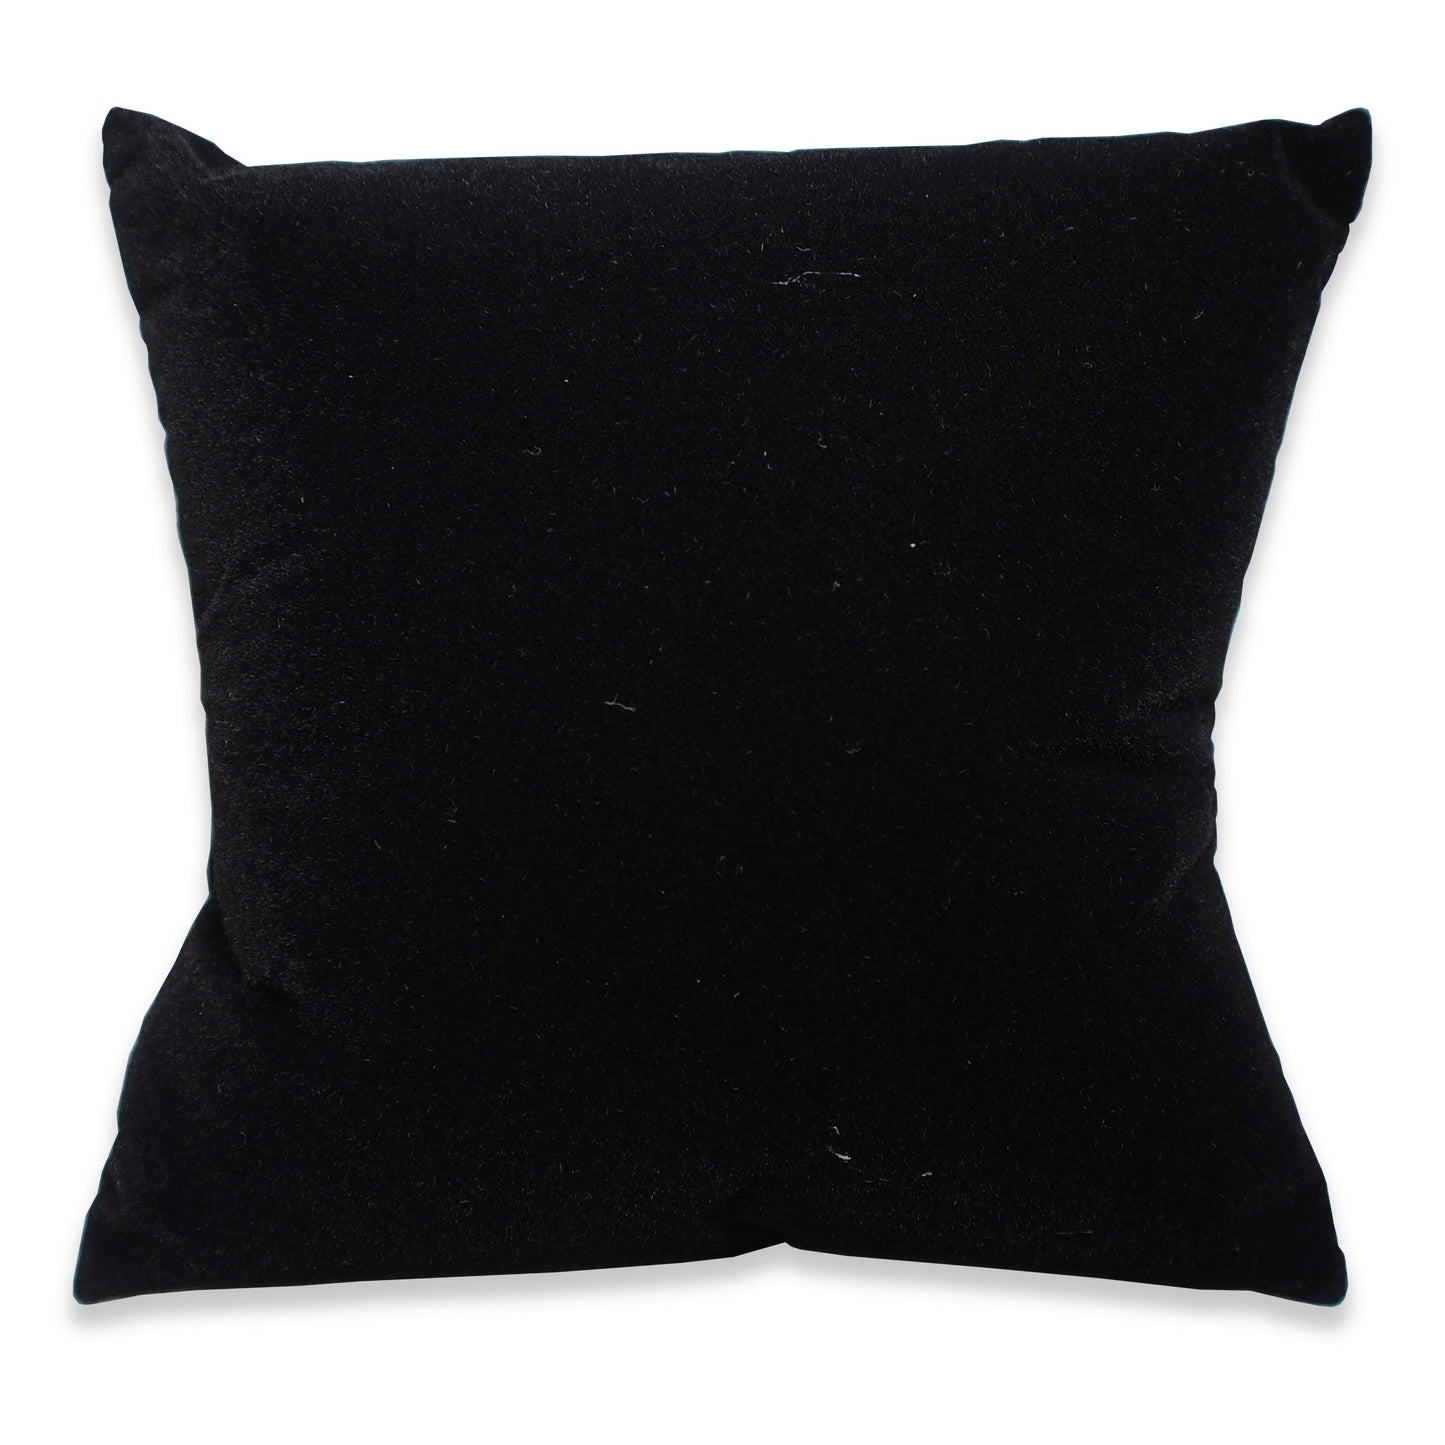 4" Black Velvet Pillow Displays